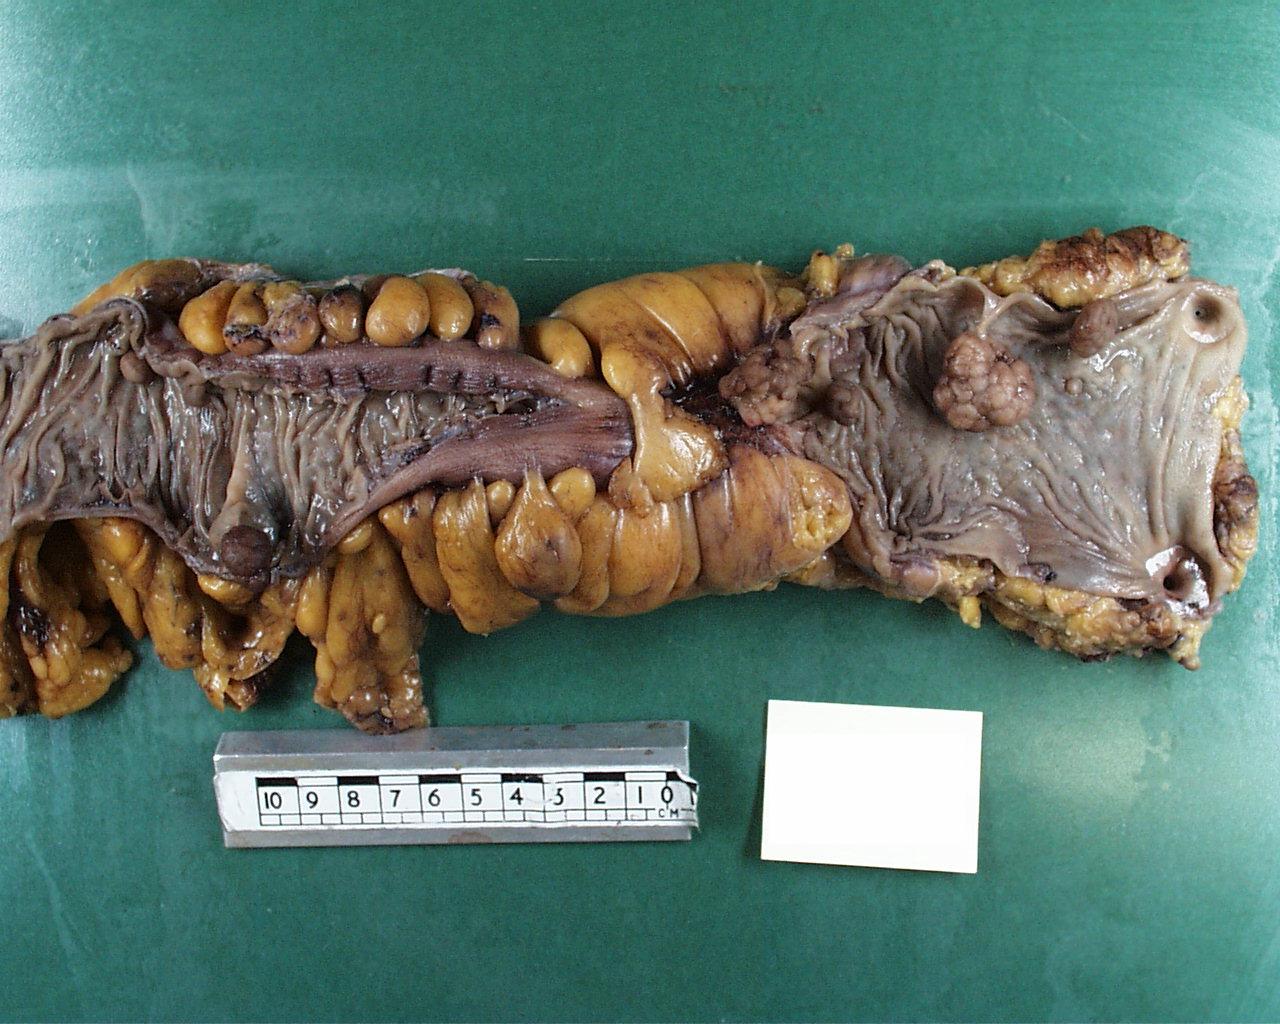 Large bowel specimen after fixation